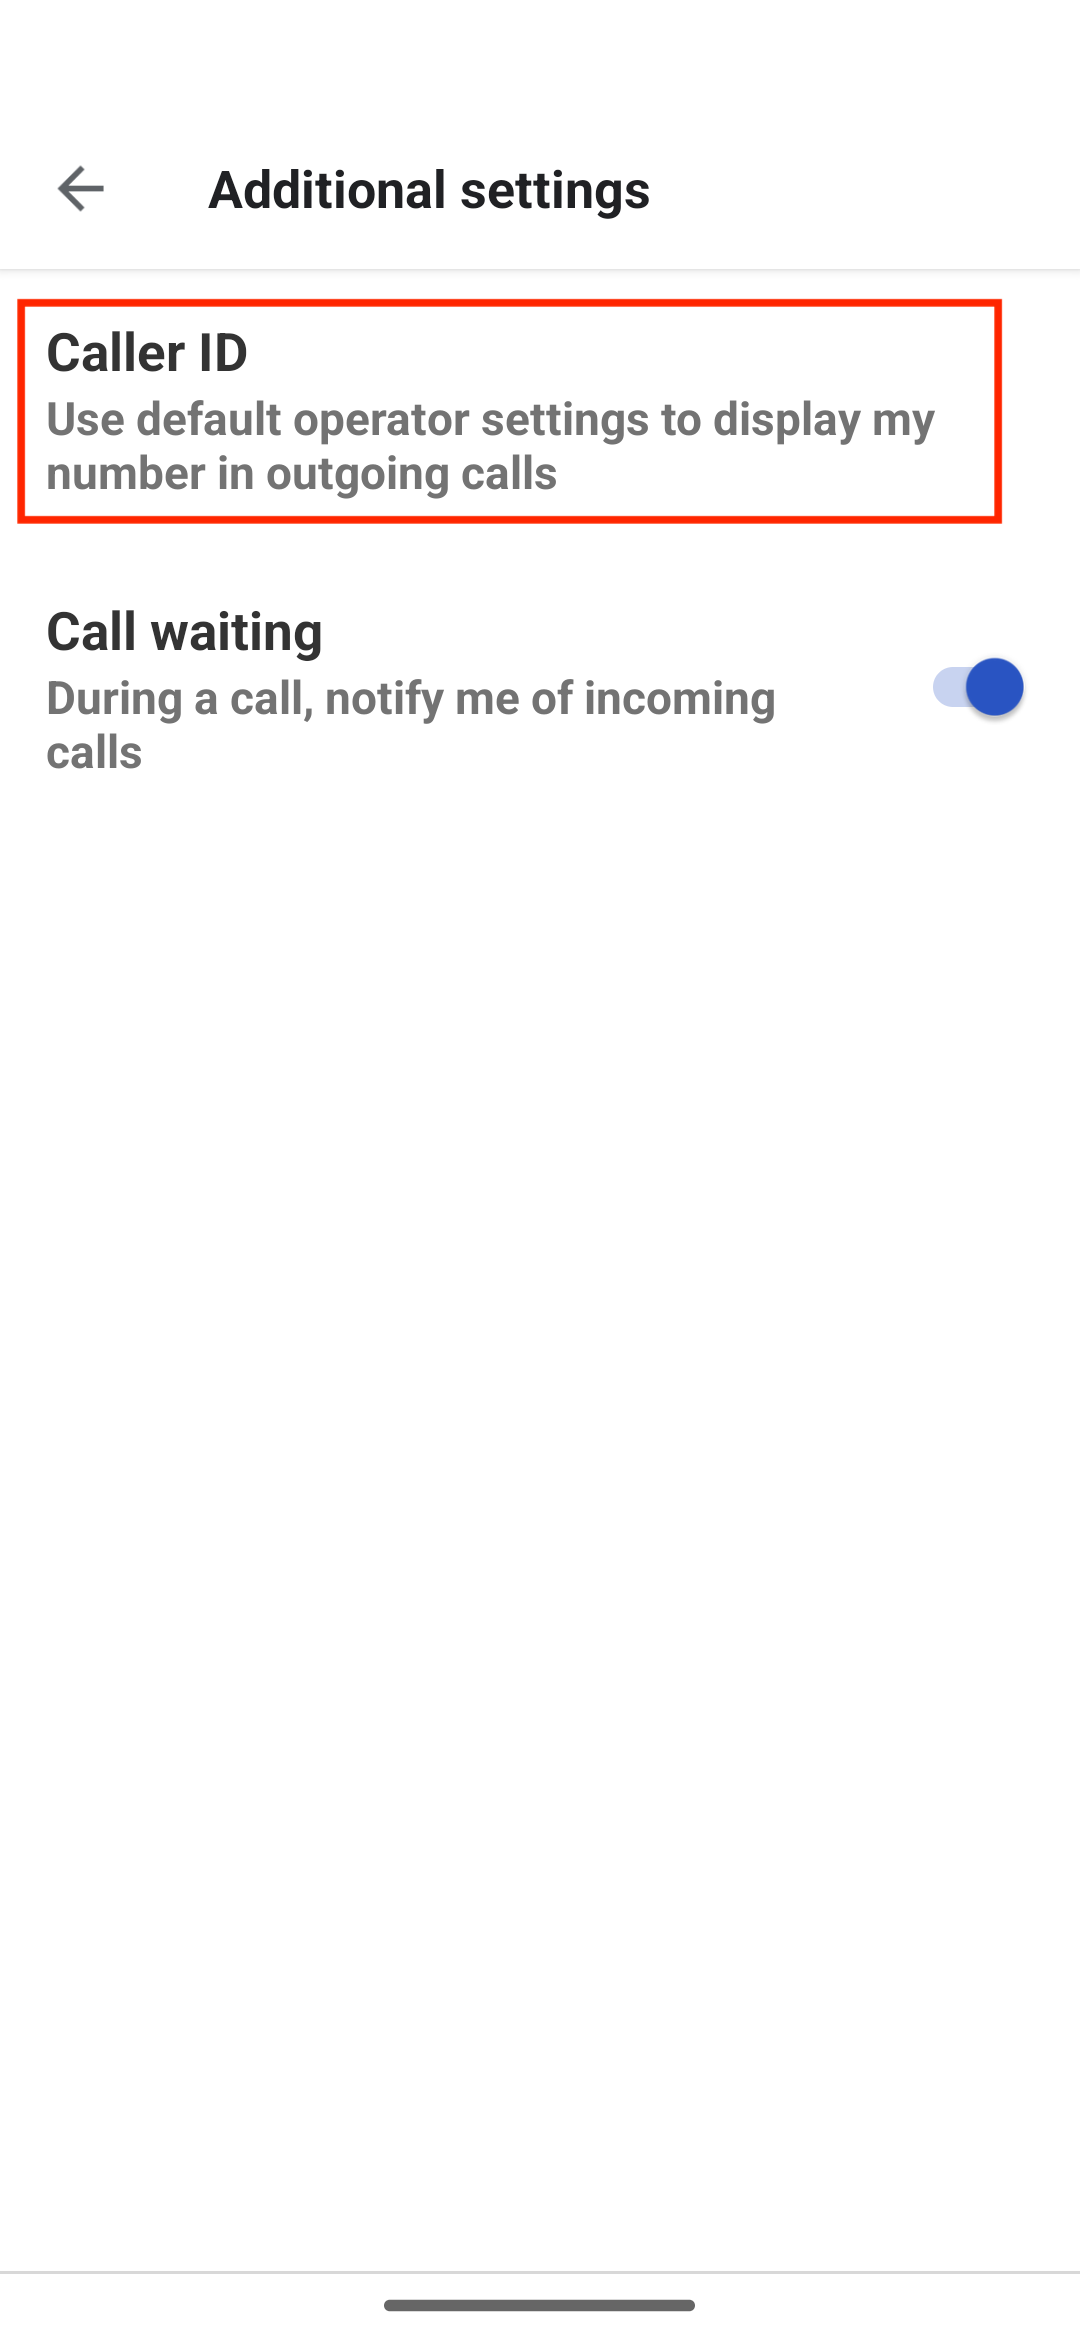 A opção Caller ID destacada no aplicativo Phone by Google. 